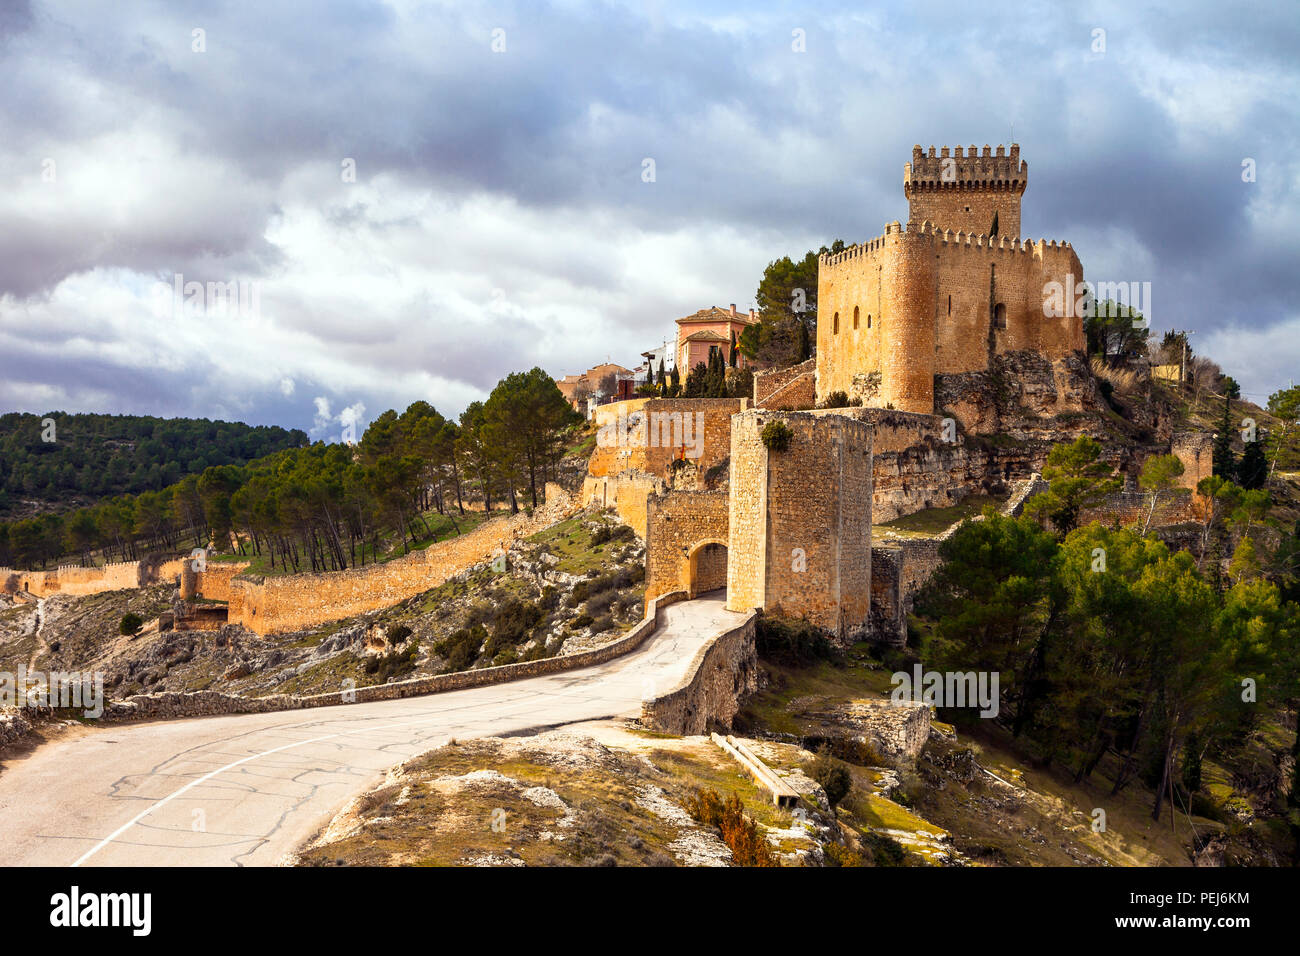 Alcorcon impressionnant château médiéval,vue panoramique,Espagne. Banque D'Images